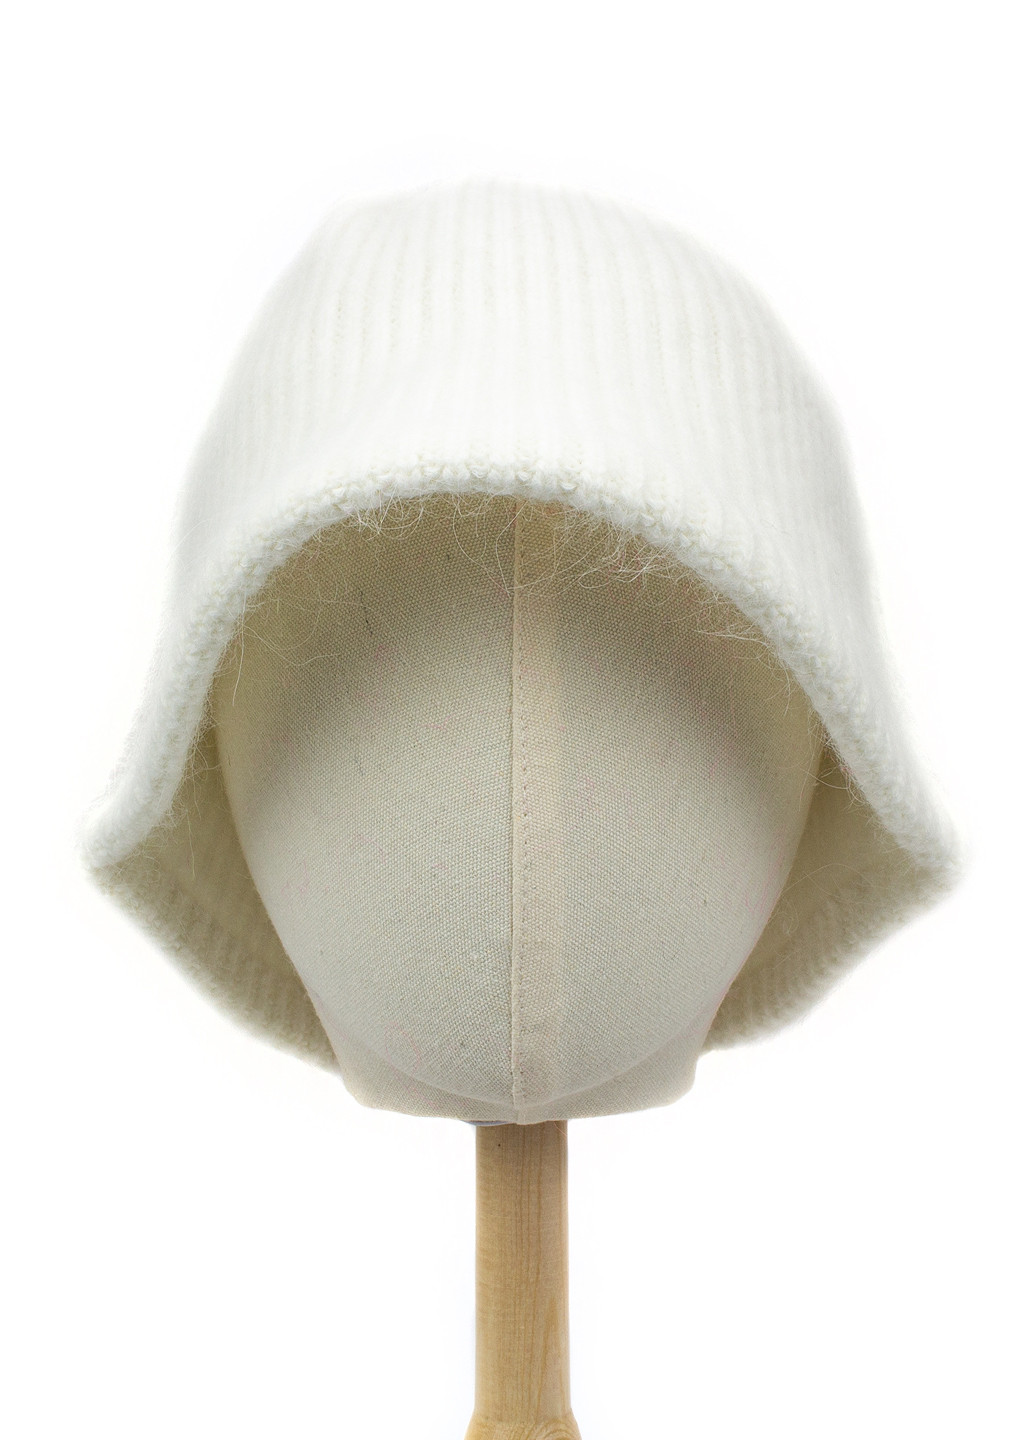 Вязаная шапка-панама из шерсти кролика белая Corze hc5002 (269342908)